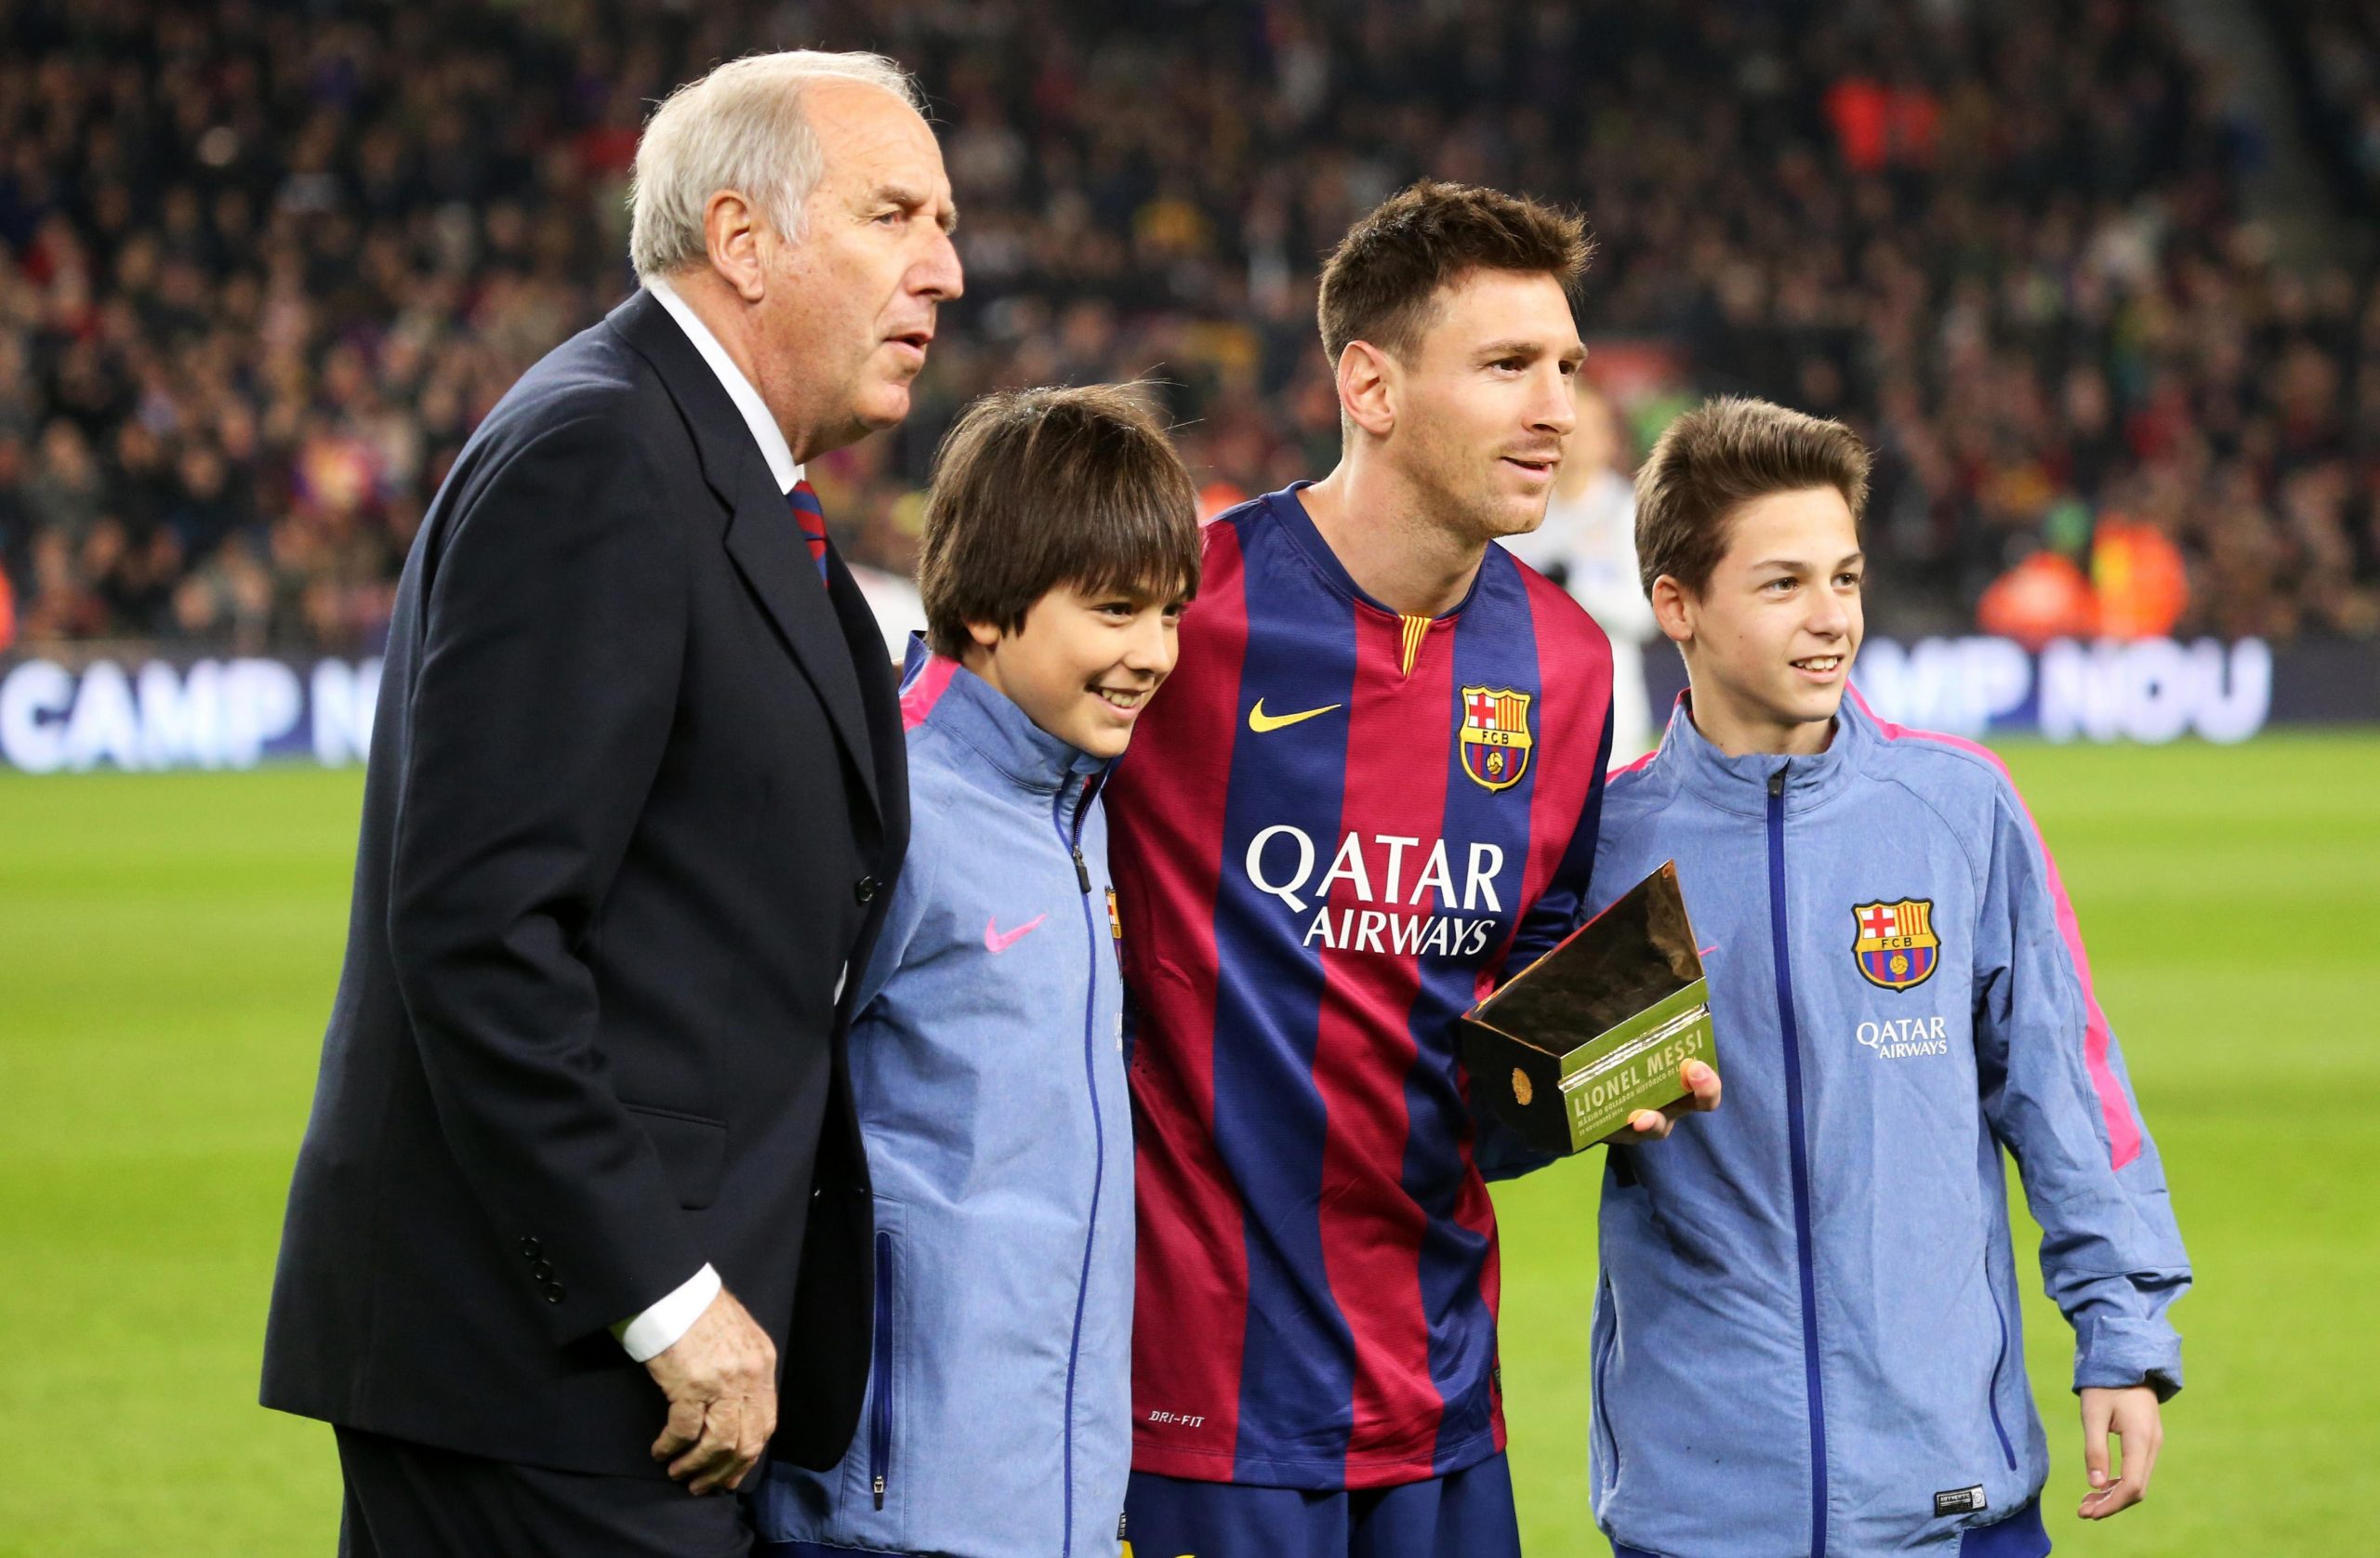 L’homme qui a signé Lionel Messi en 2000, sur une serviette, quitte le FC Barcelone